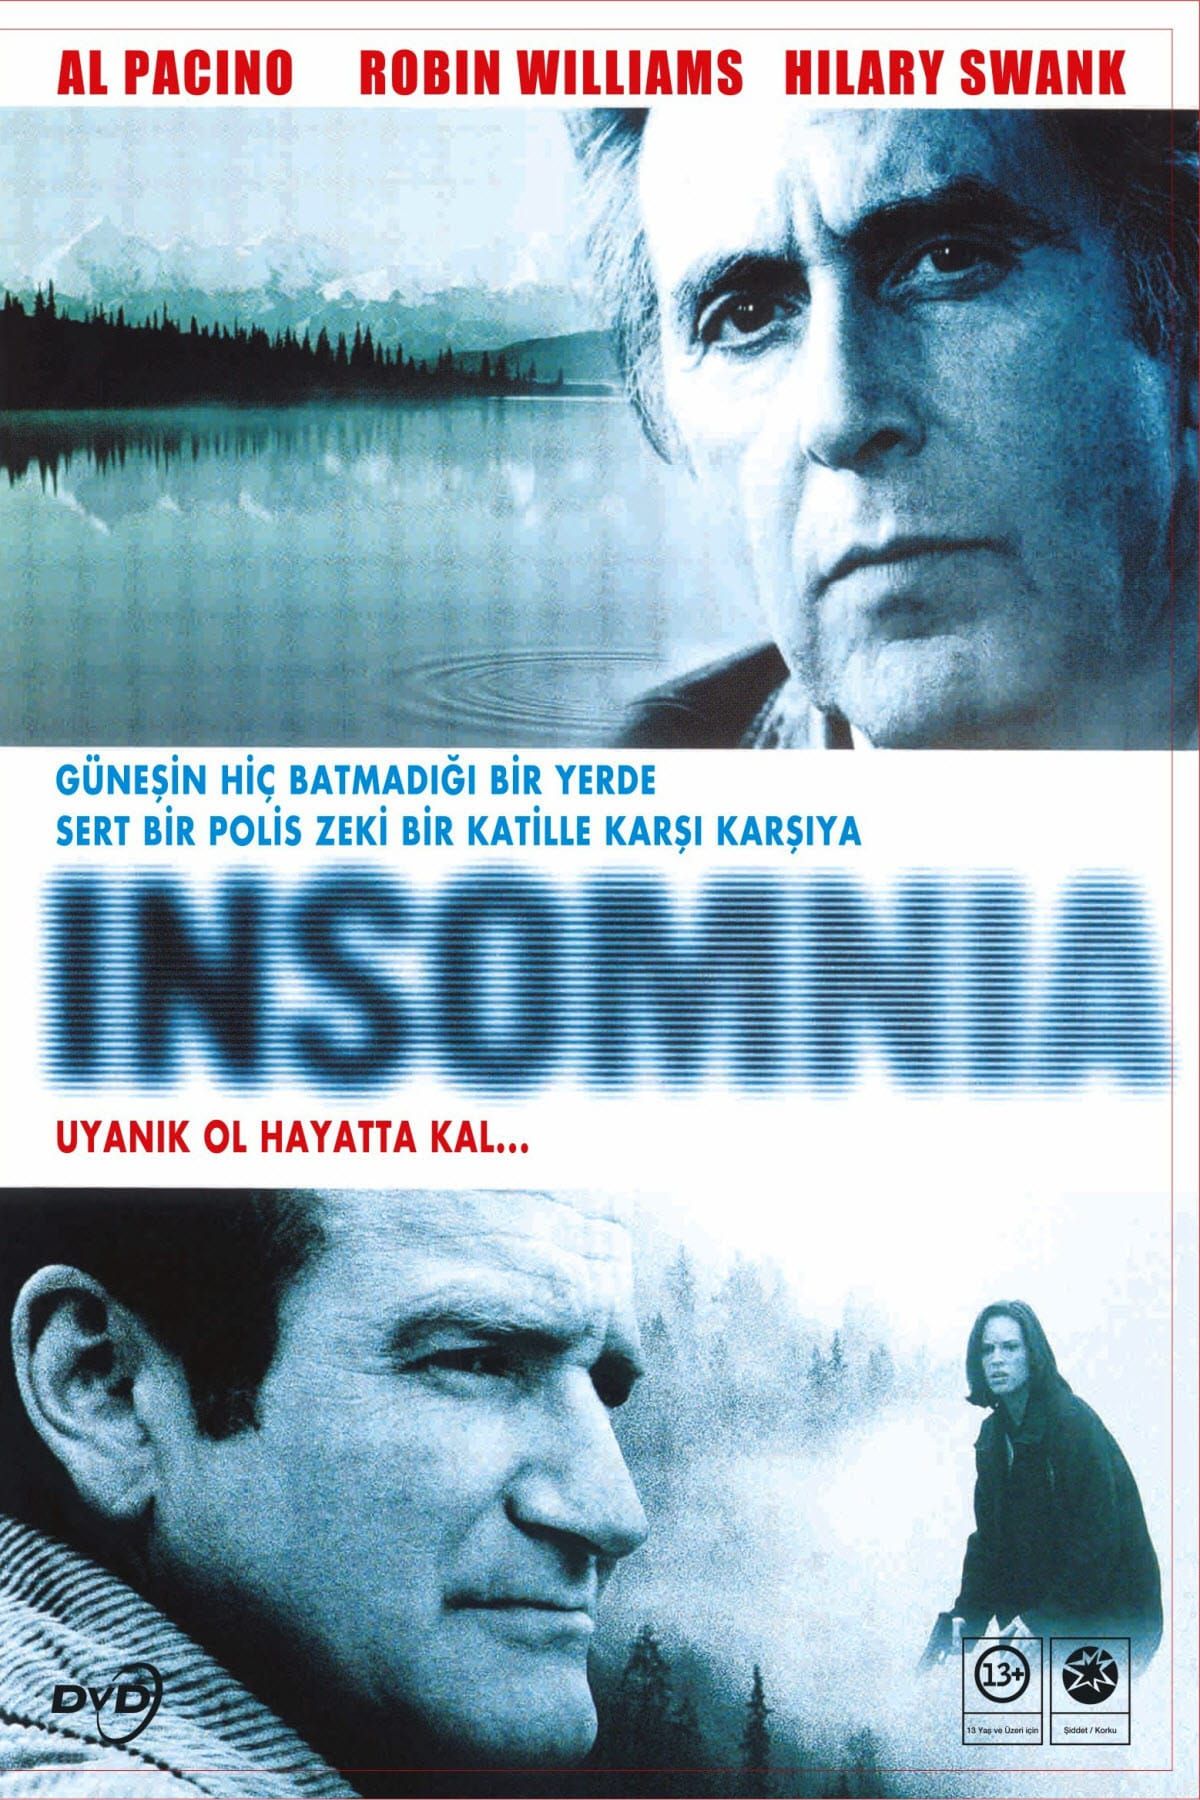 Insomnia (2002) 448Kbps 23.976Fps 48Khz 5.1Ch DVD Turkish Audio TAC